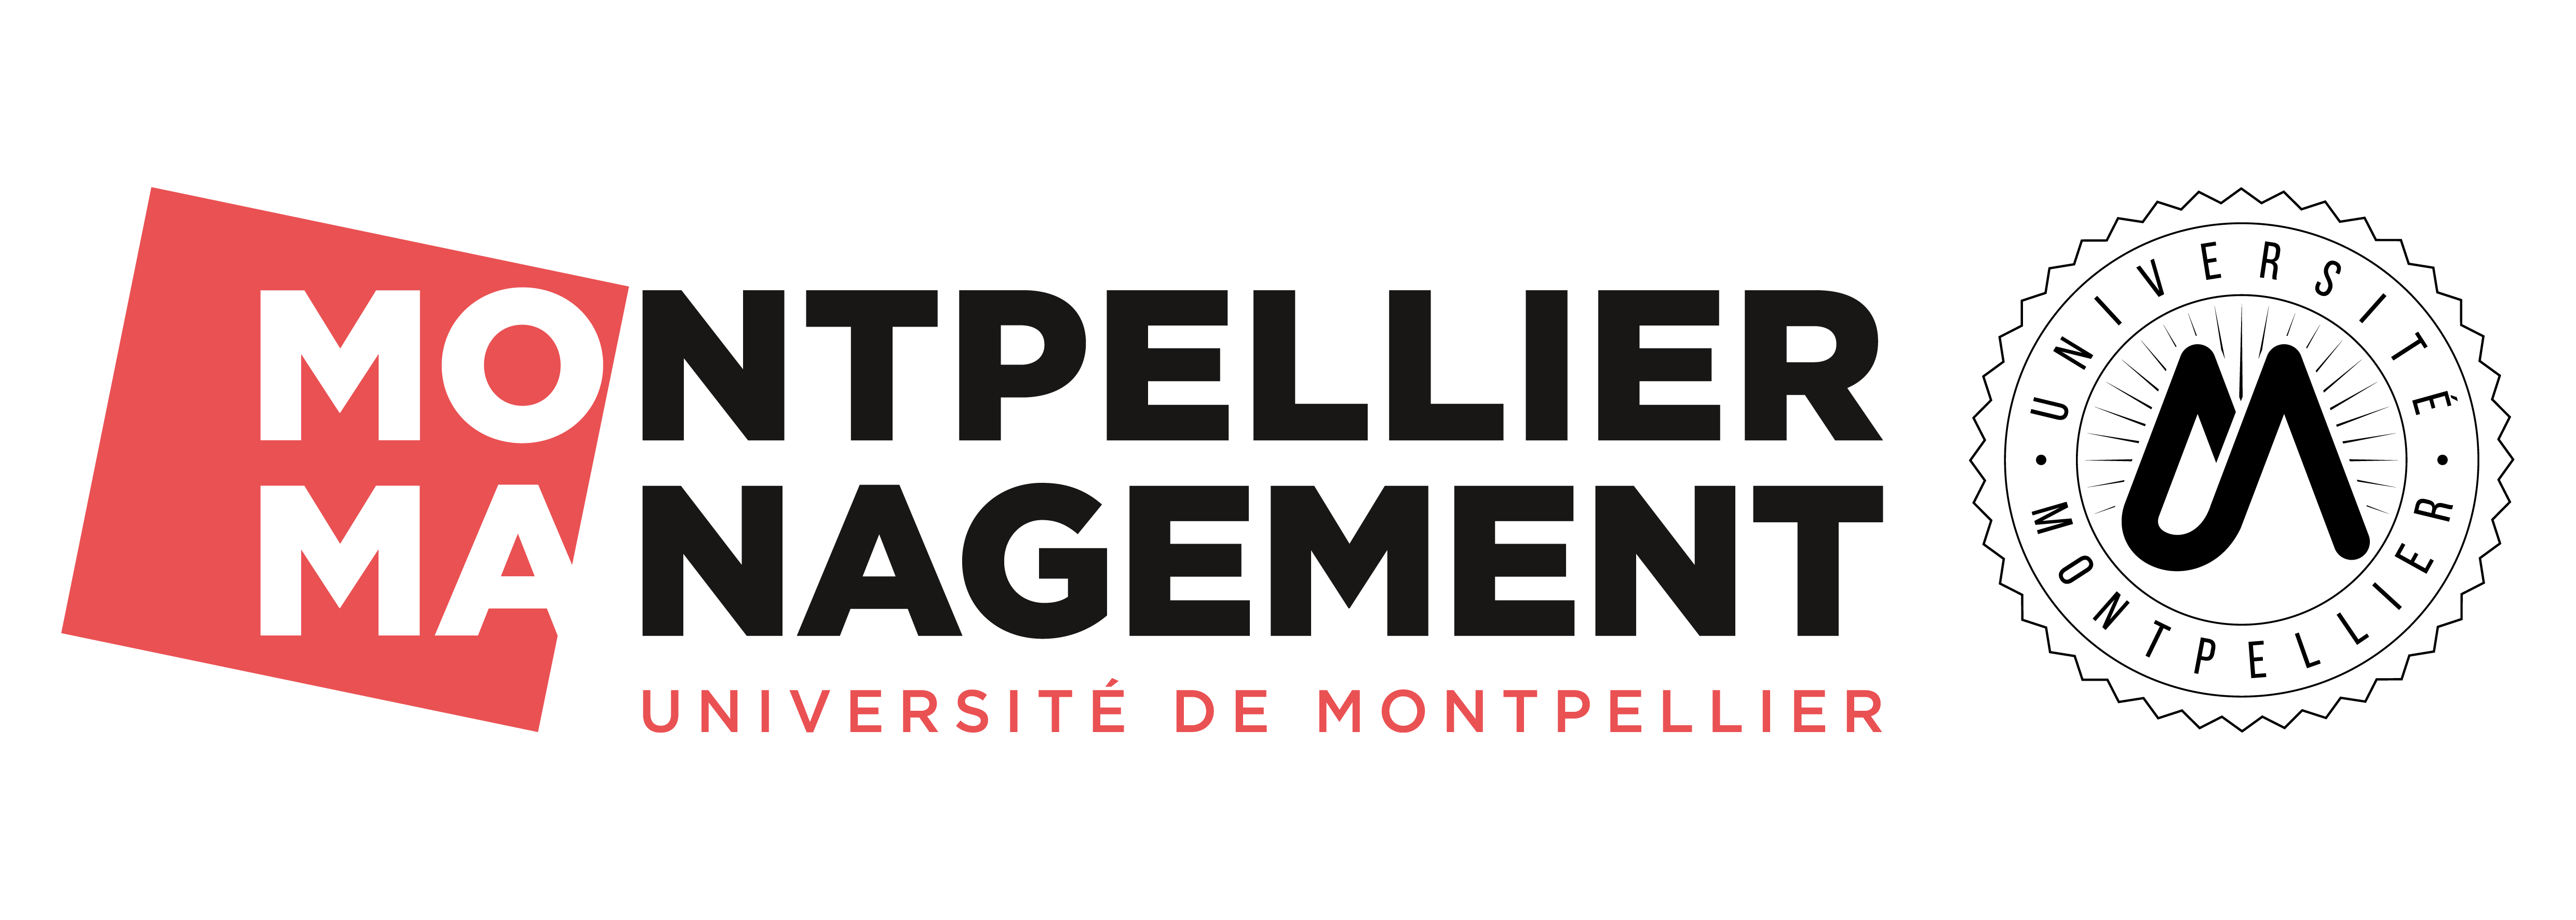 Montpellier Management